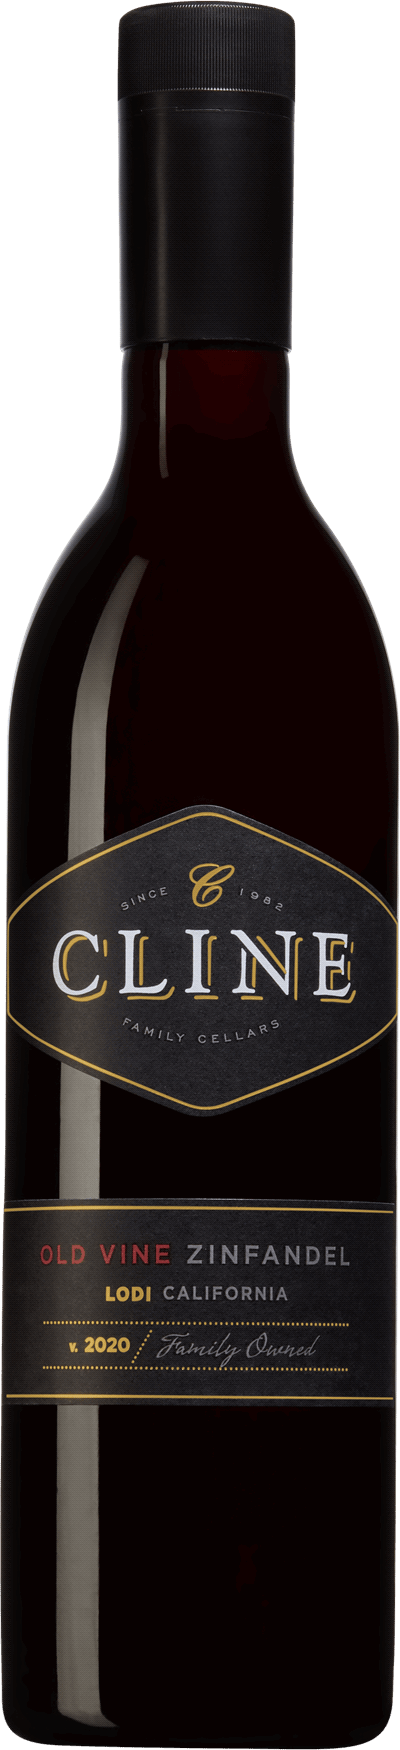 Cline Old Vine Zinfandel Zinfandel, 2021